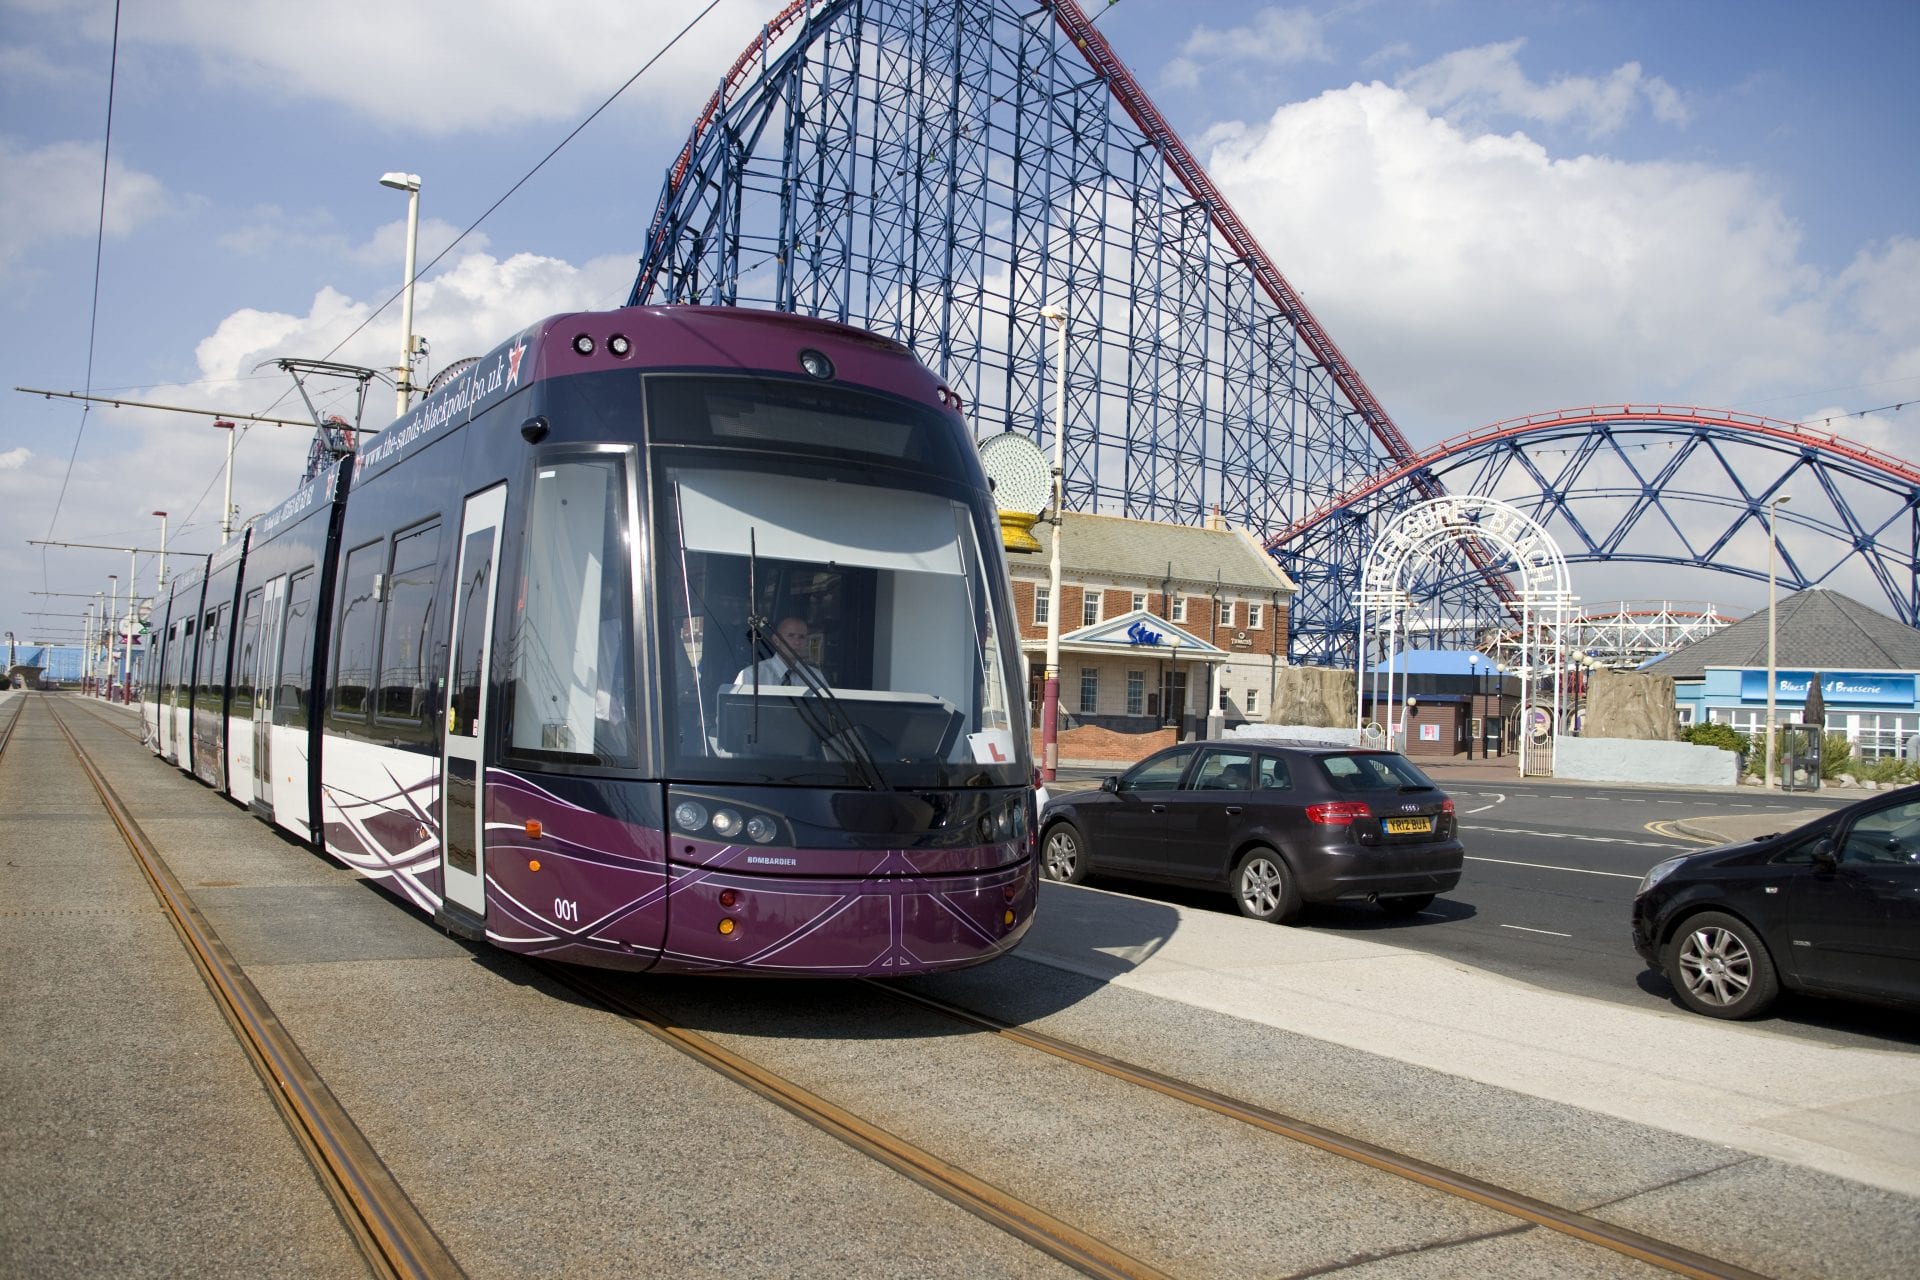 Enjoy a Blackpool Tram Ride!